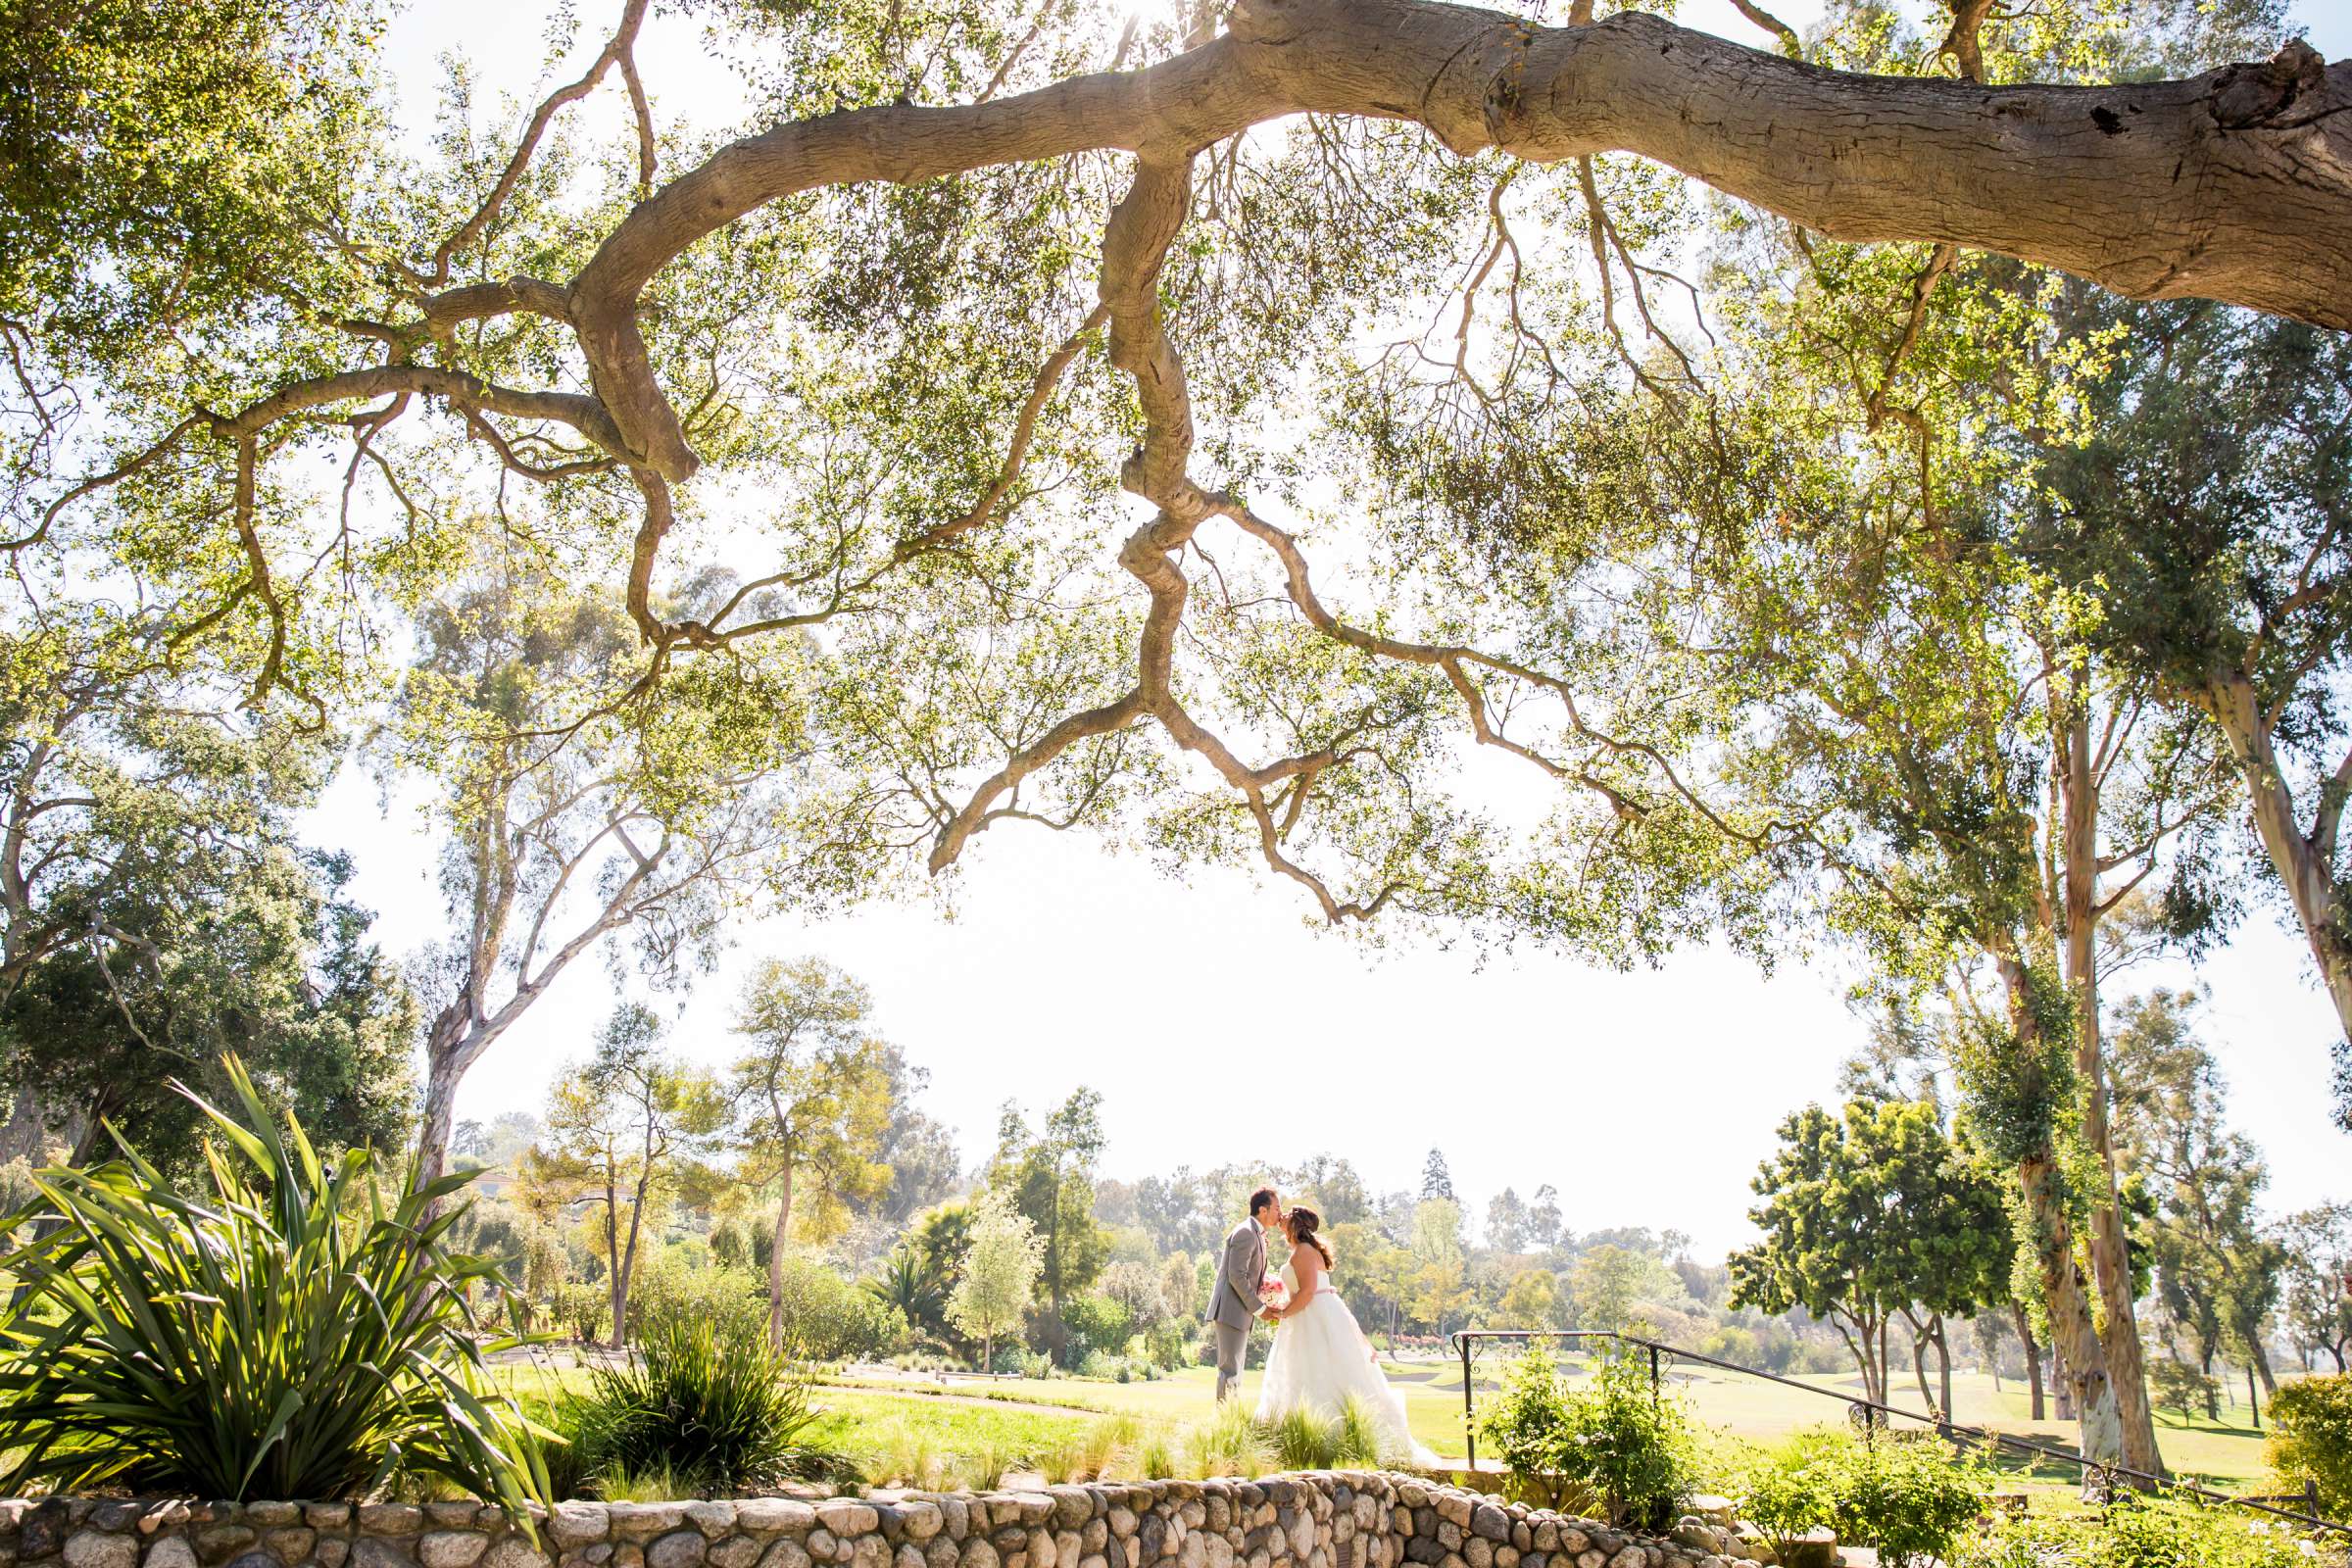 Rancho Santa Fe Golf Club Wedding coordinated by Monarch Weddings, Carolynn and Jon Wedding Photo #1 by True Photography